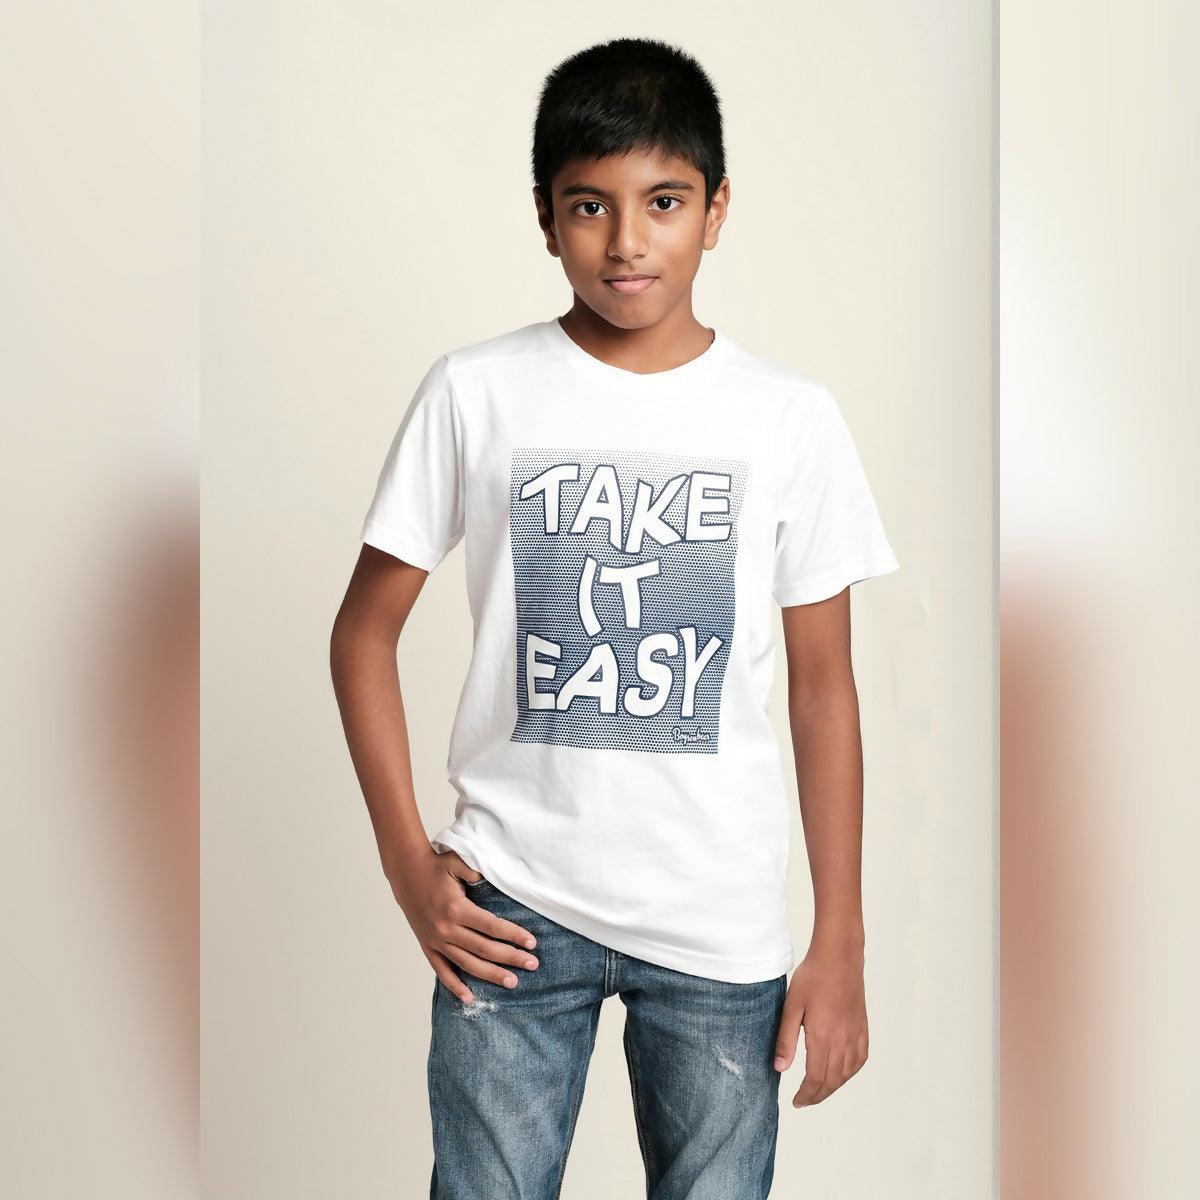 Khanani's Take it easy graphic tees for boys kids tshirts - ValueBox